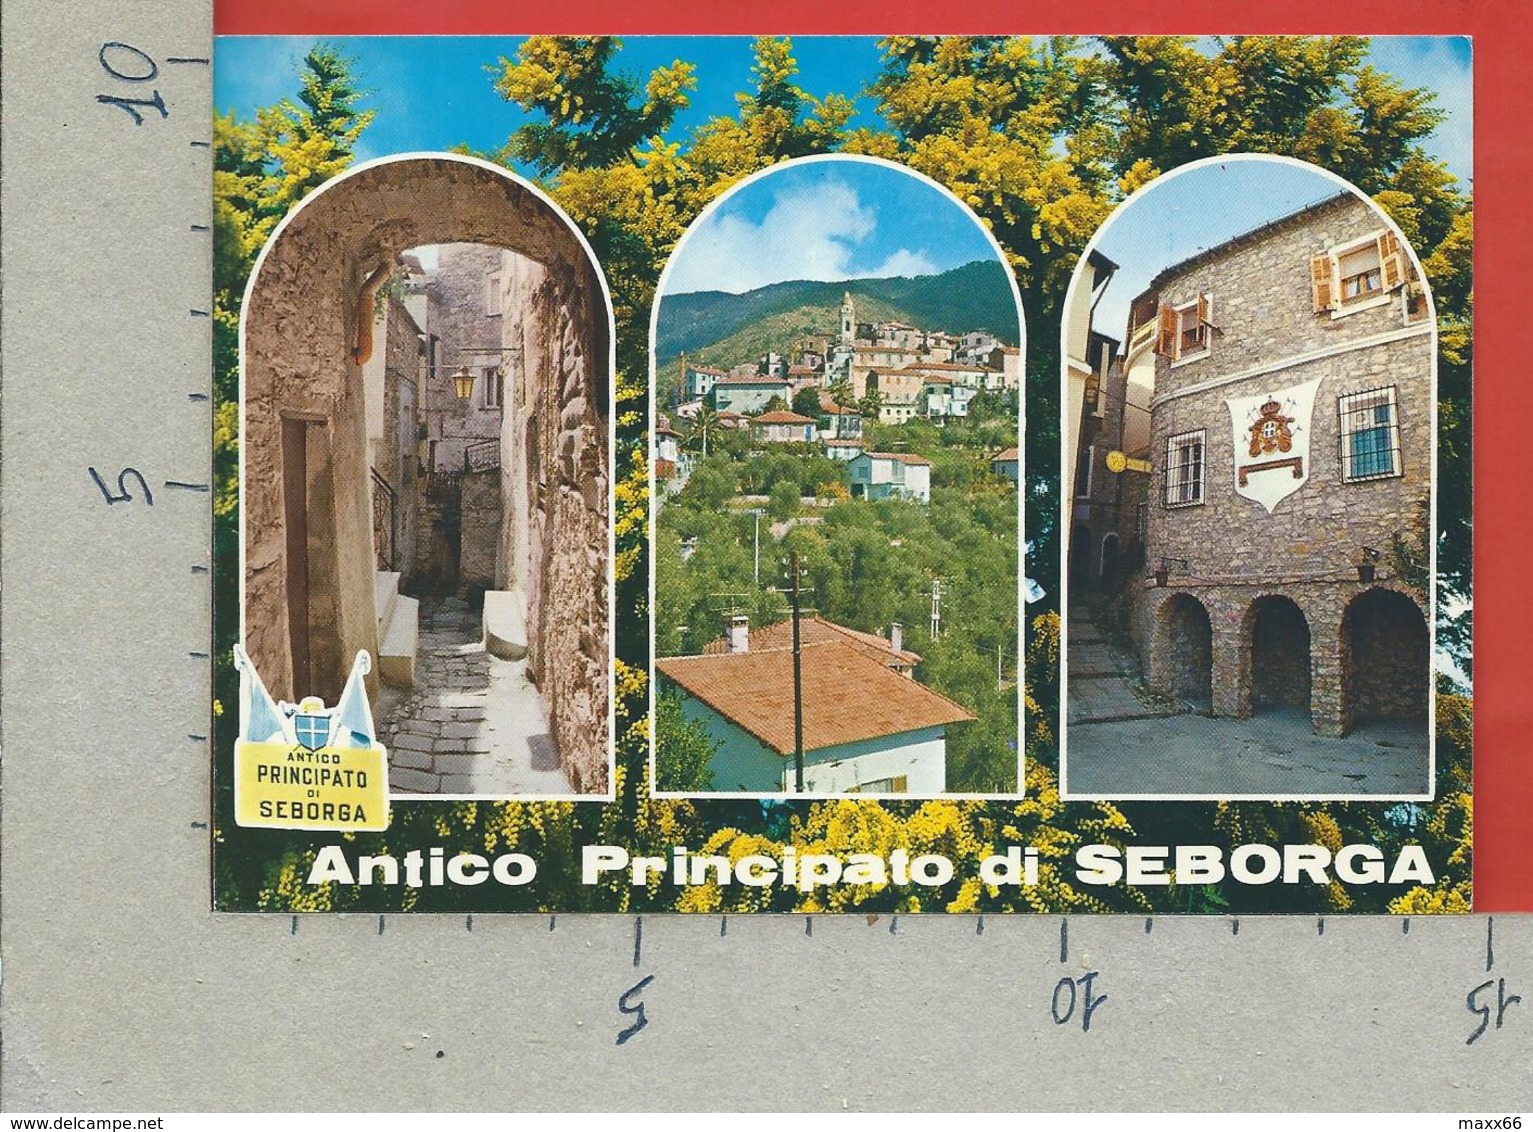 CARTOLINA VG ITALIA - ANTICO PRINCIPATO DI SEBORGA - Vedutine Multivue - 10 X 15 - 1987 - Imperia